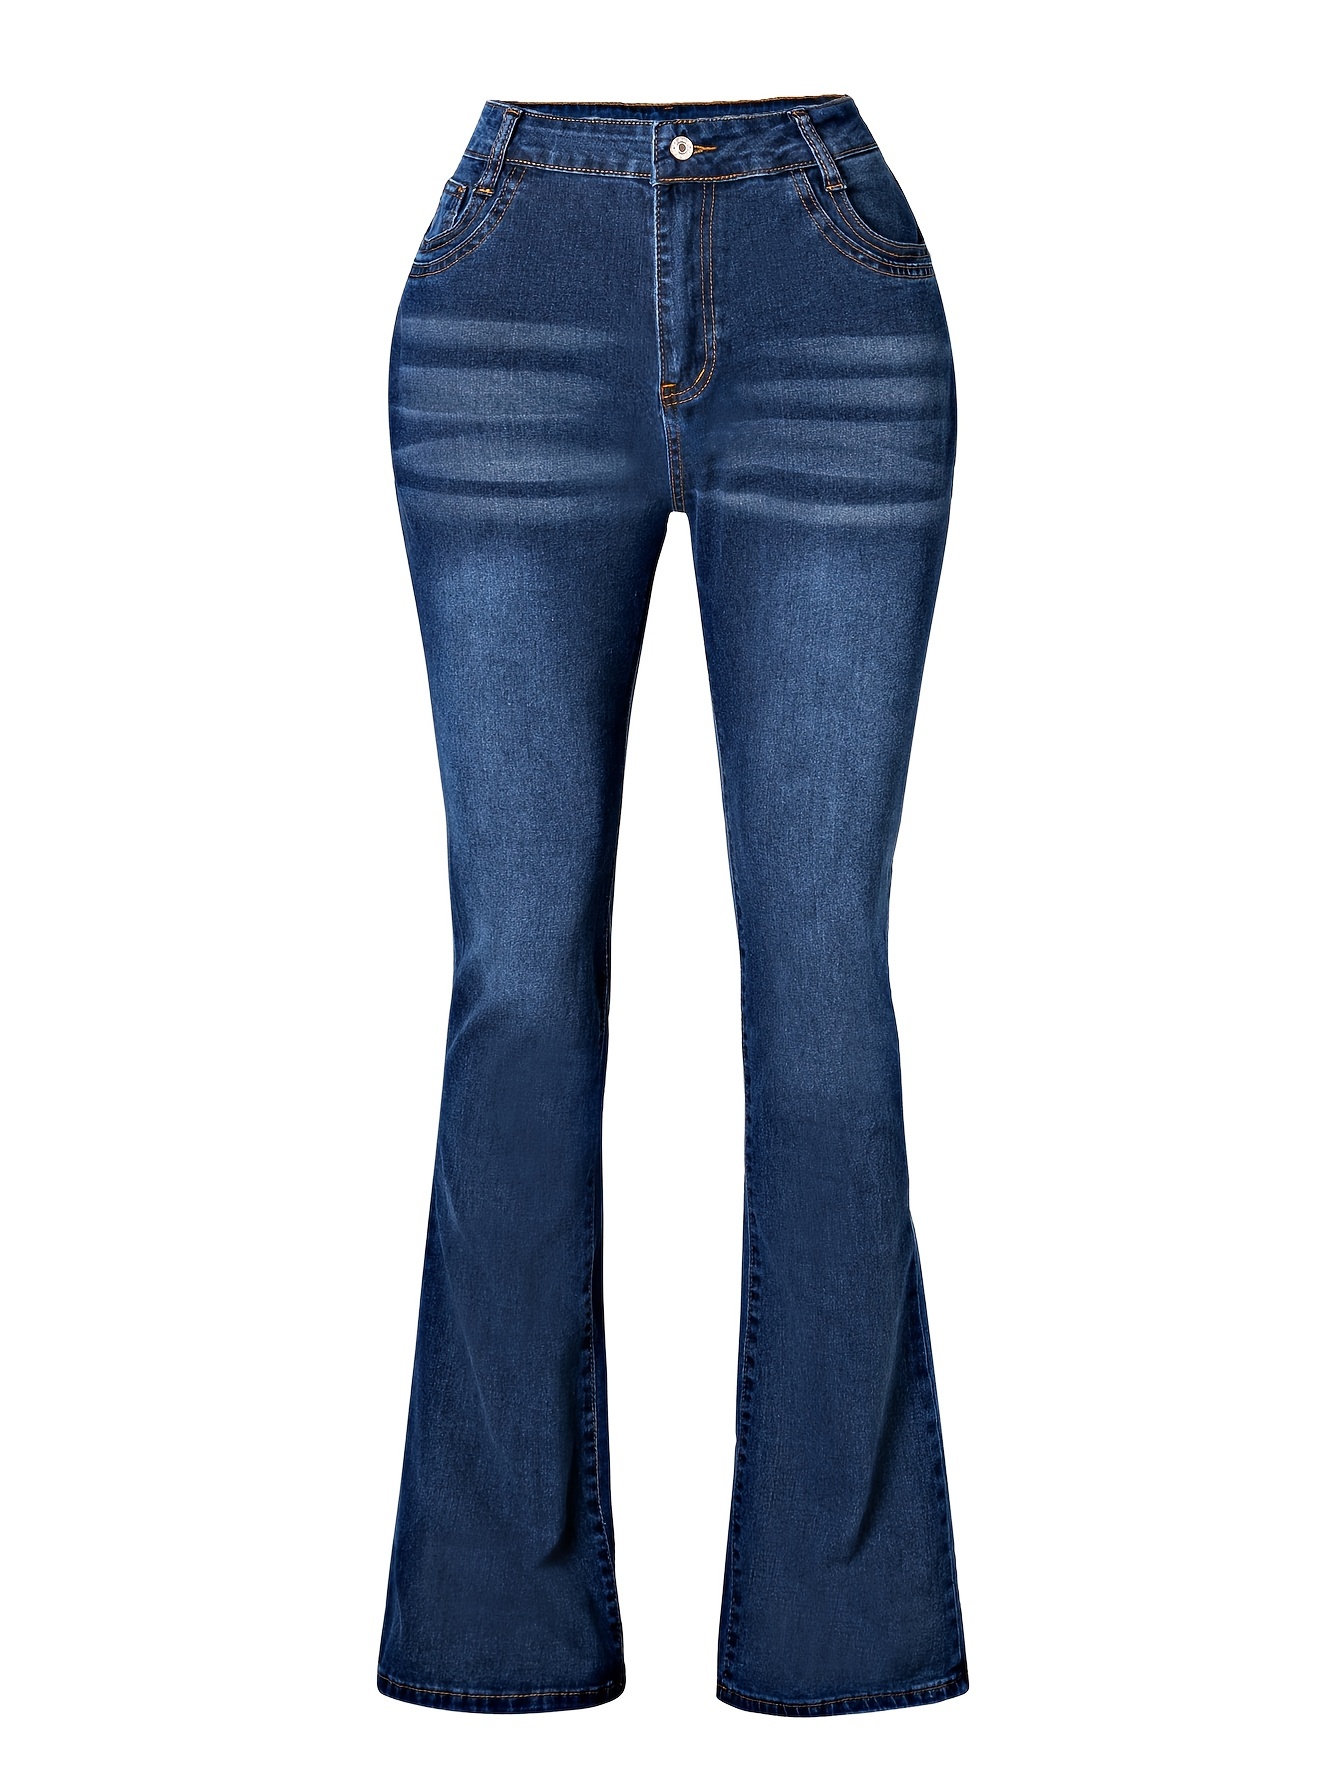 Jeans superajustados para mujer - Jeans elásticos